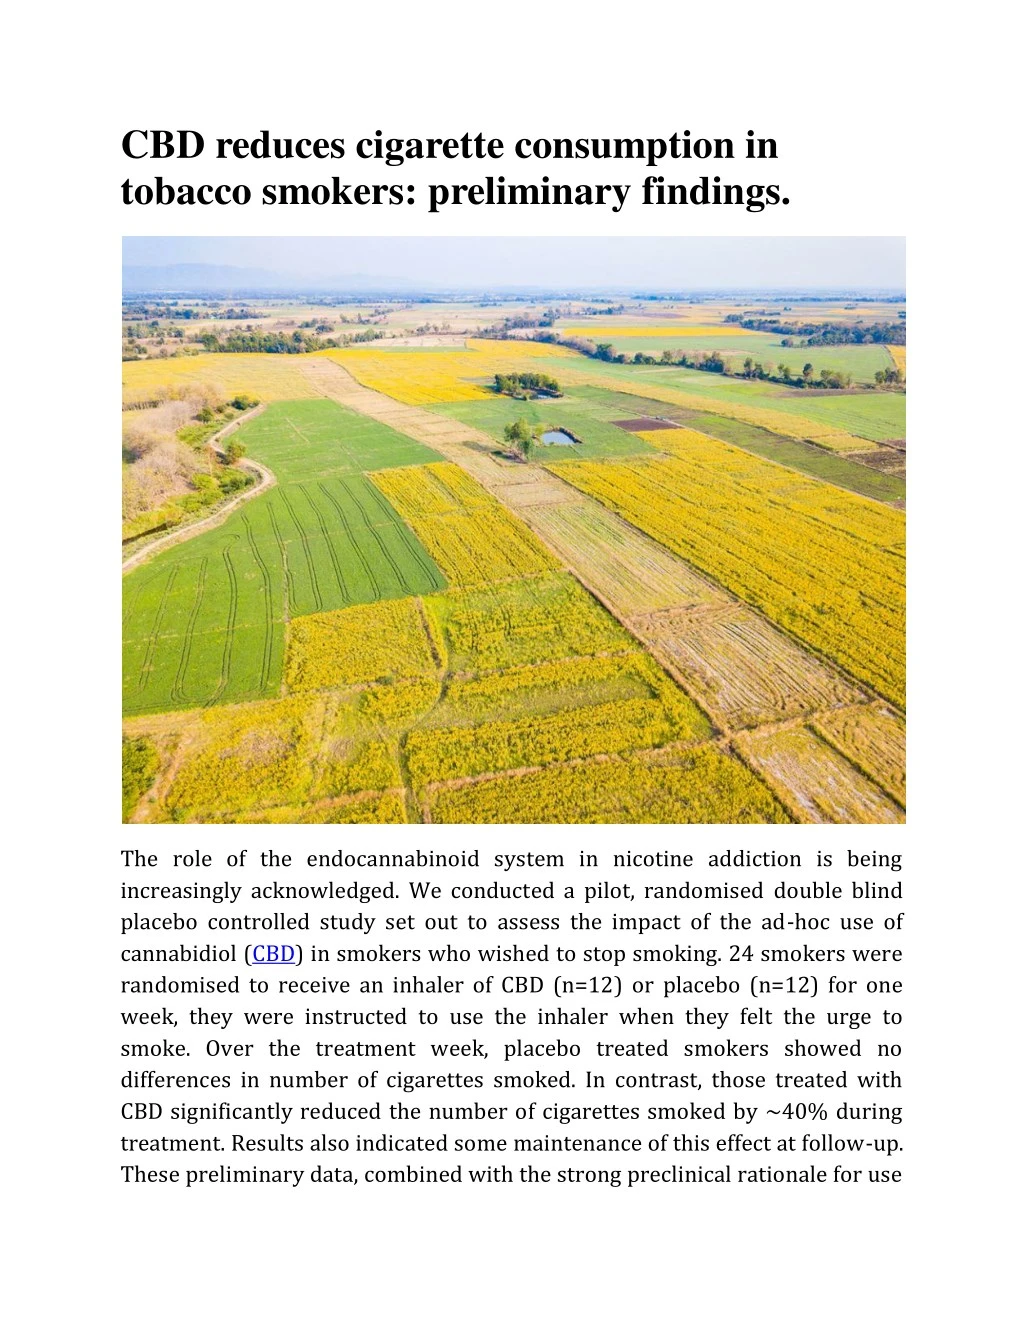 cbd reduces cigarette consumption in tobacco